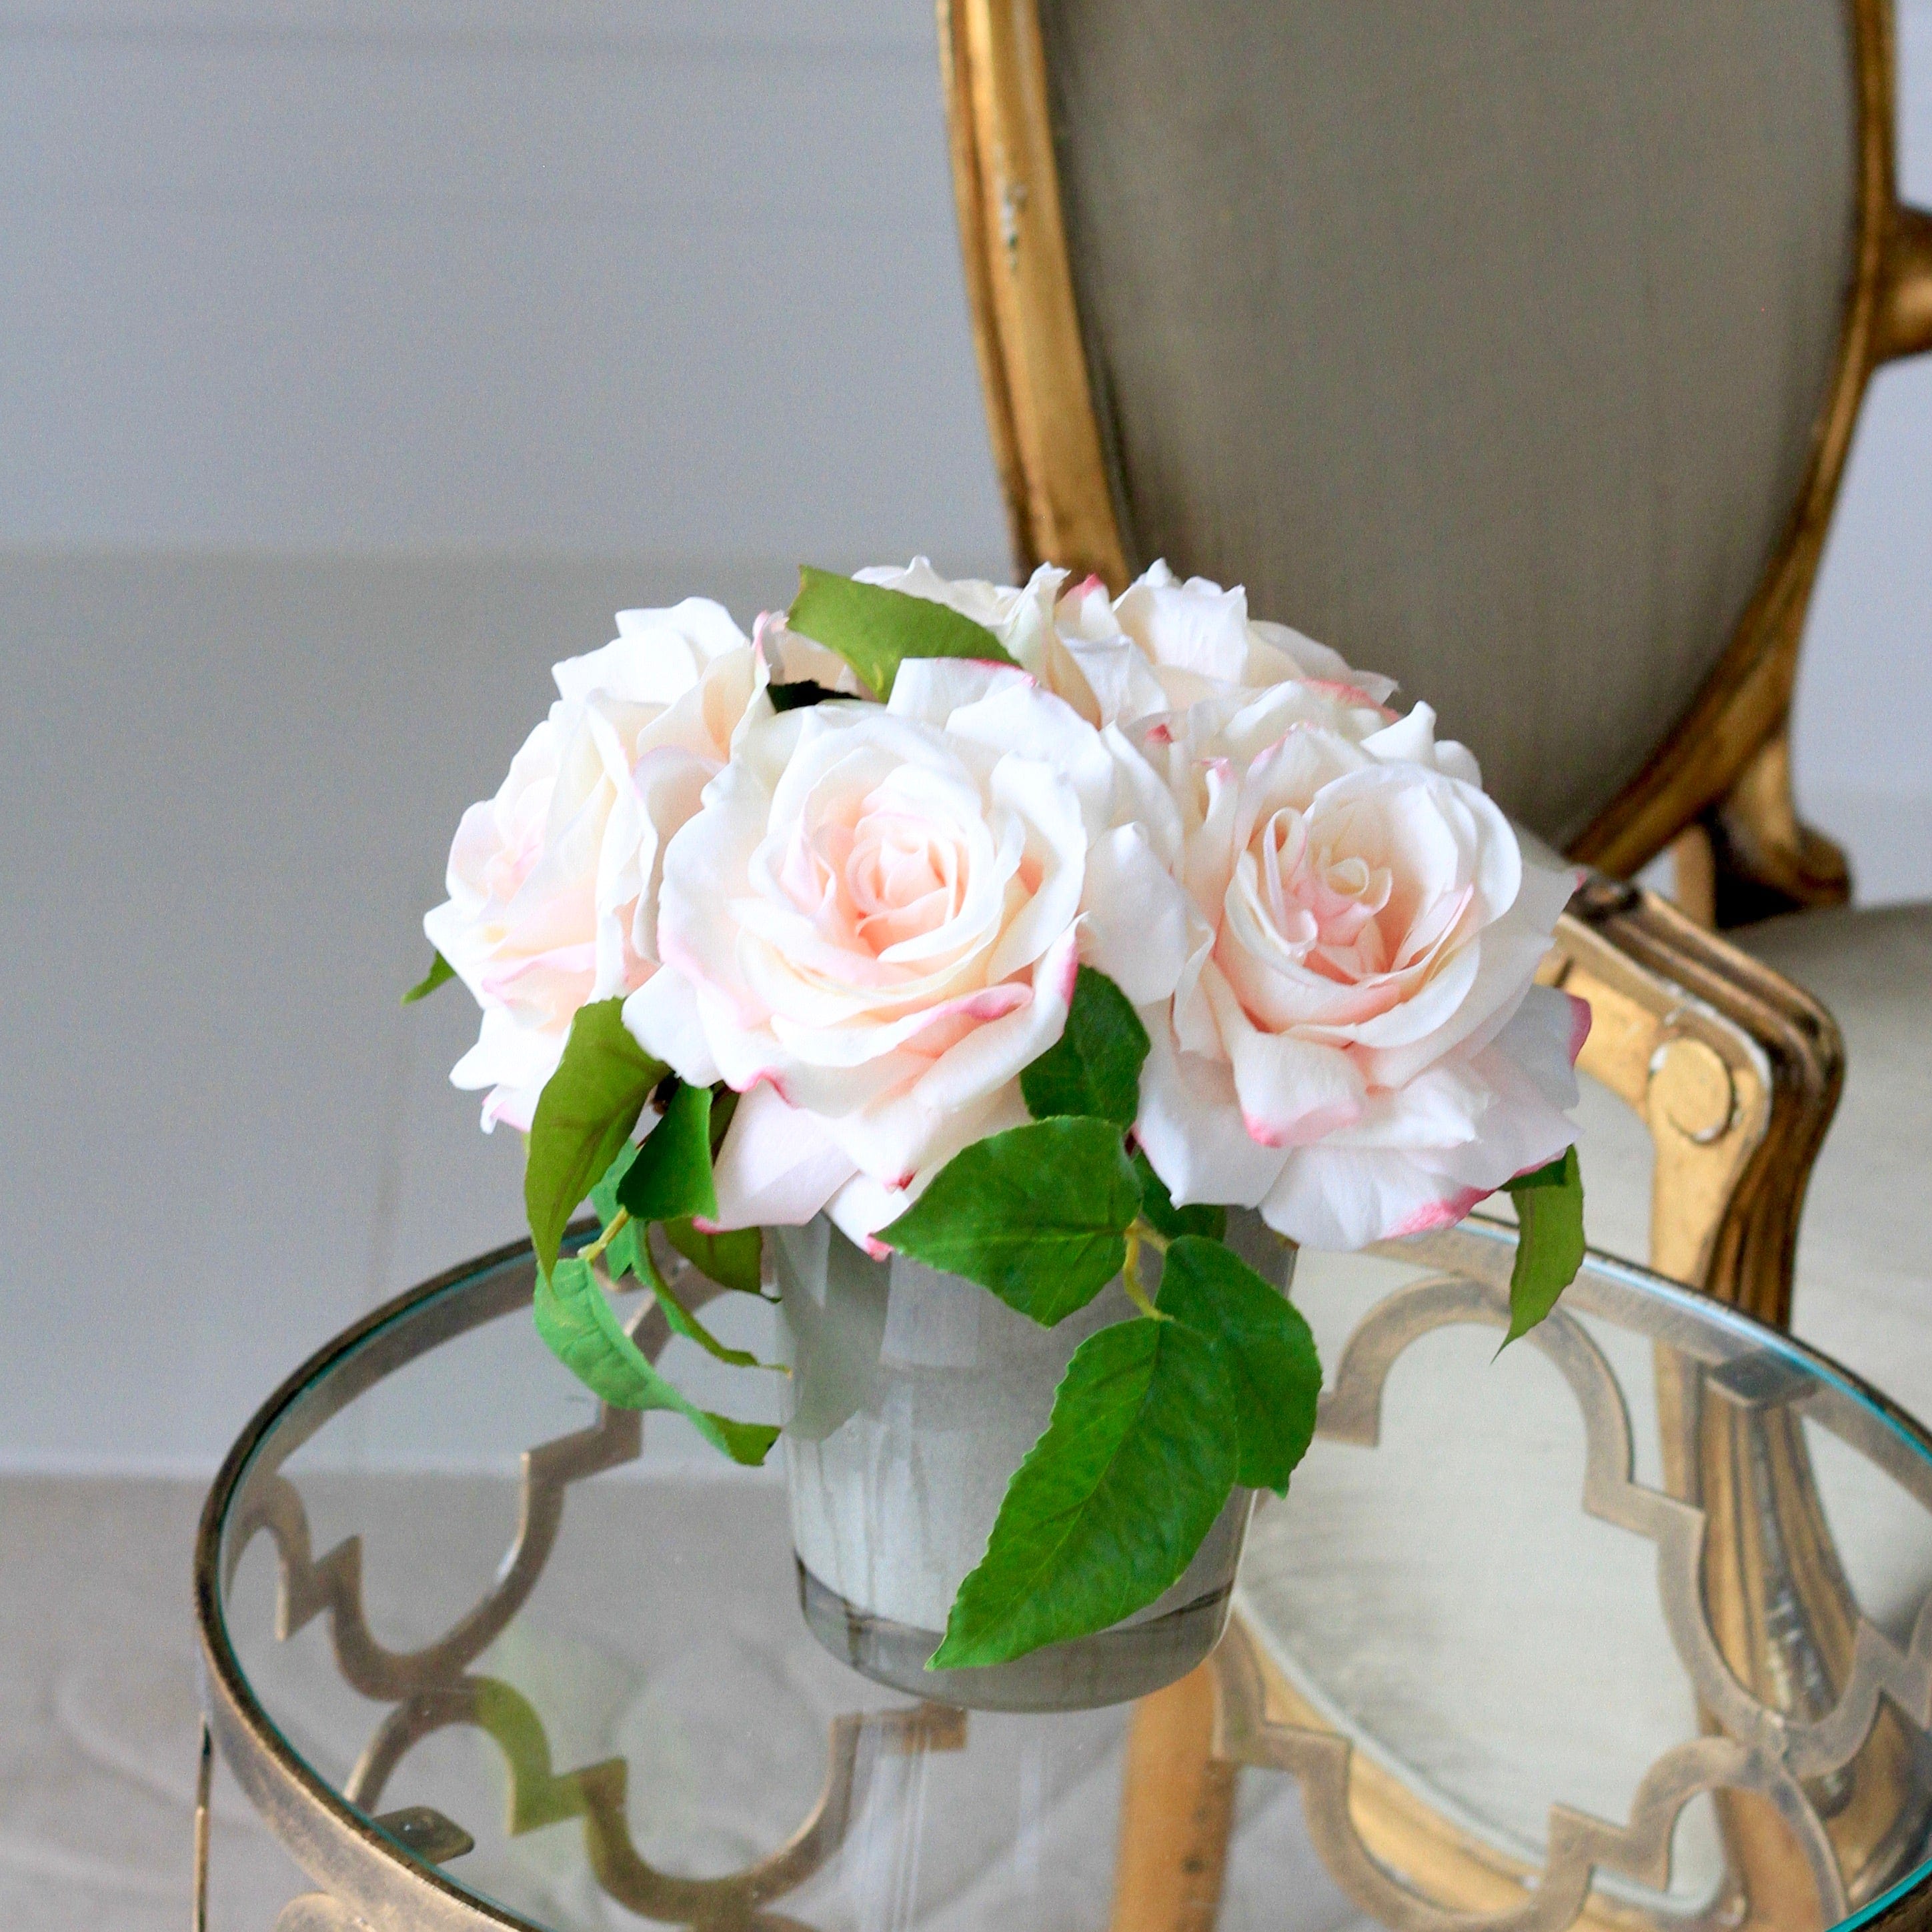 Rose Silk Flower Arrangement with Vase